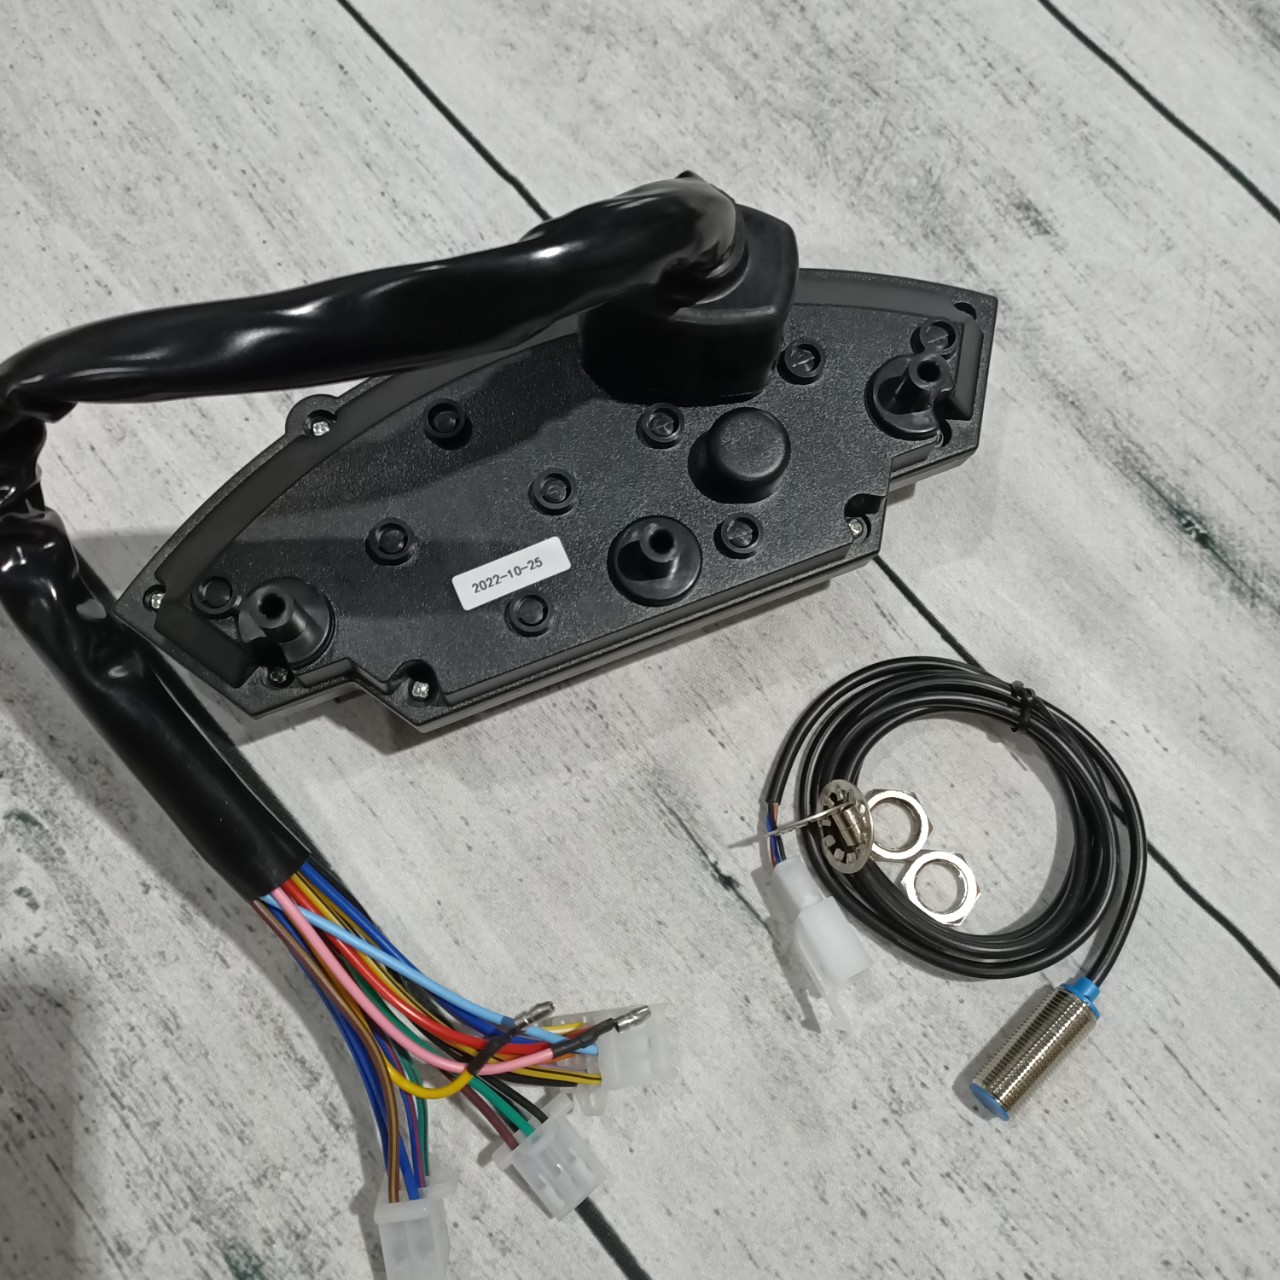 Đồng hồ điện tử ZX10r có sẵn mắt đọc dành cho các loại xe máy - TKB8844